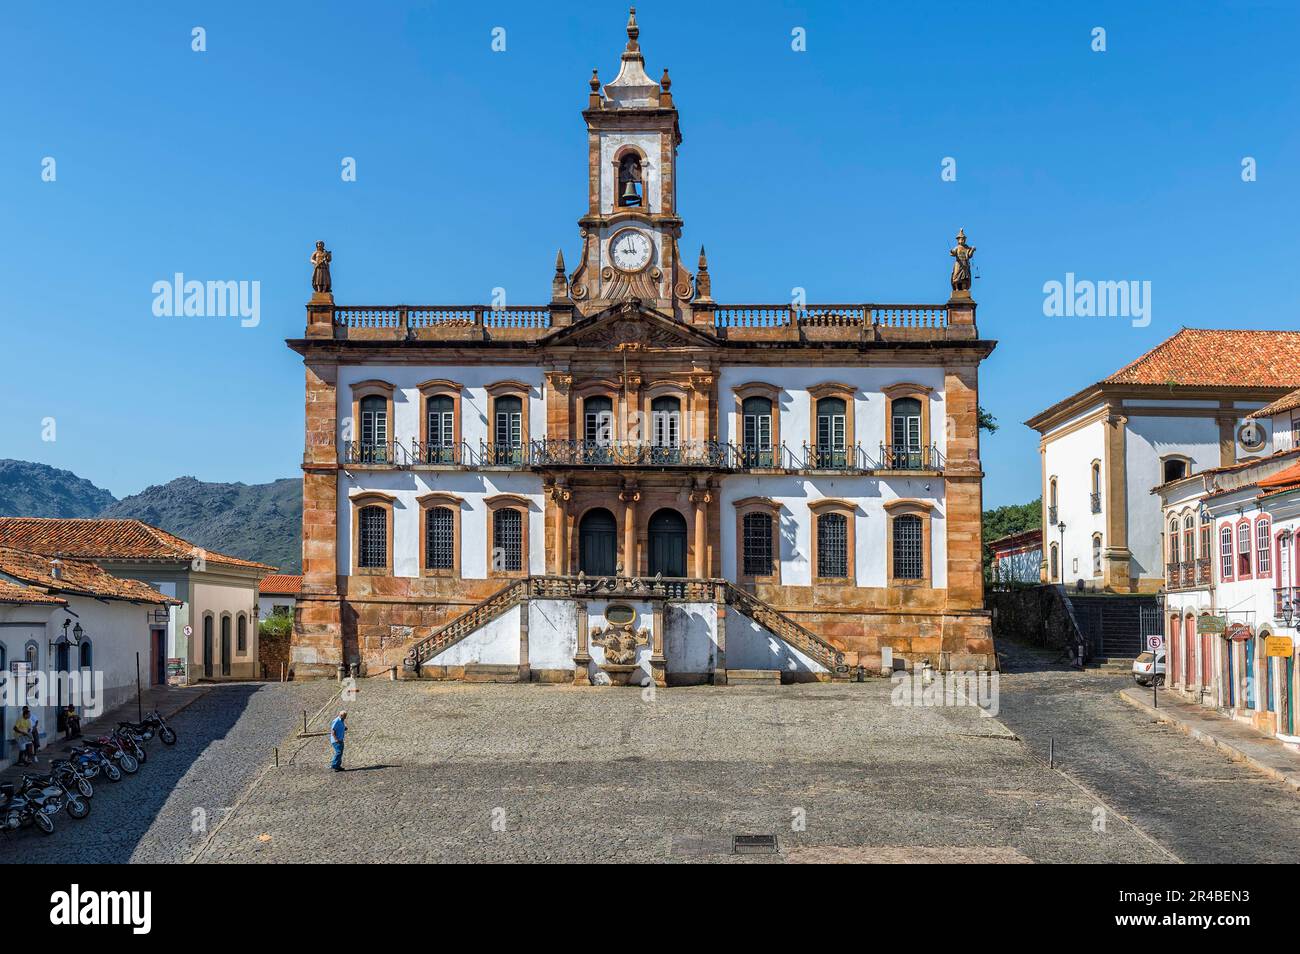 Tiradentes Plaza, Praca, Museum Da Inconfidencia, Ouro Preto, Minas Gerais, Brazil Stock Photo